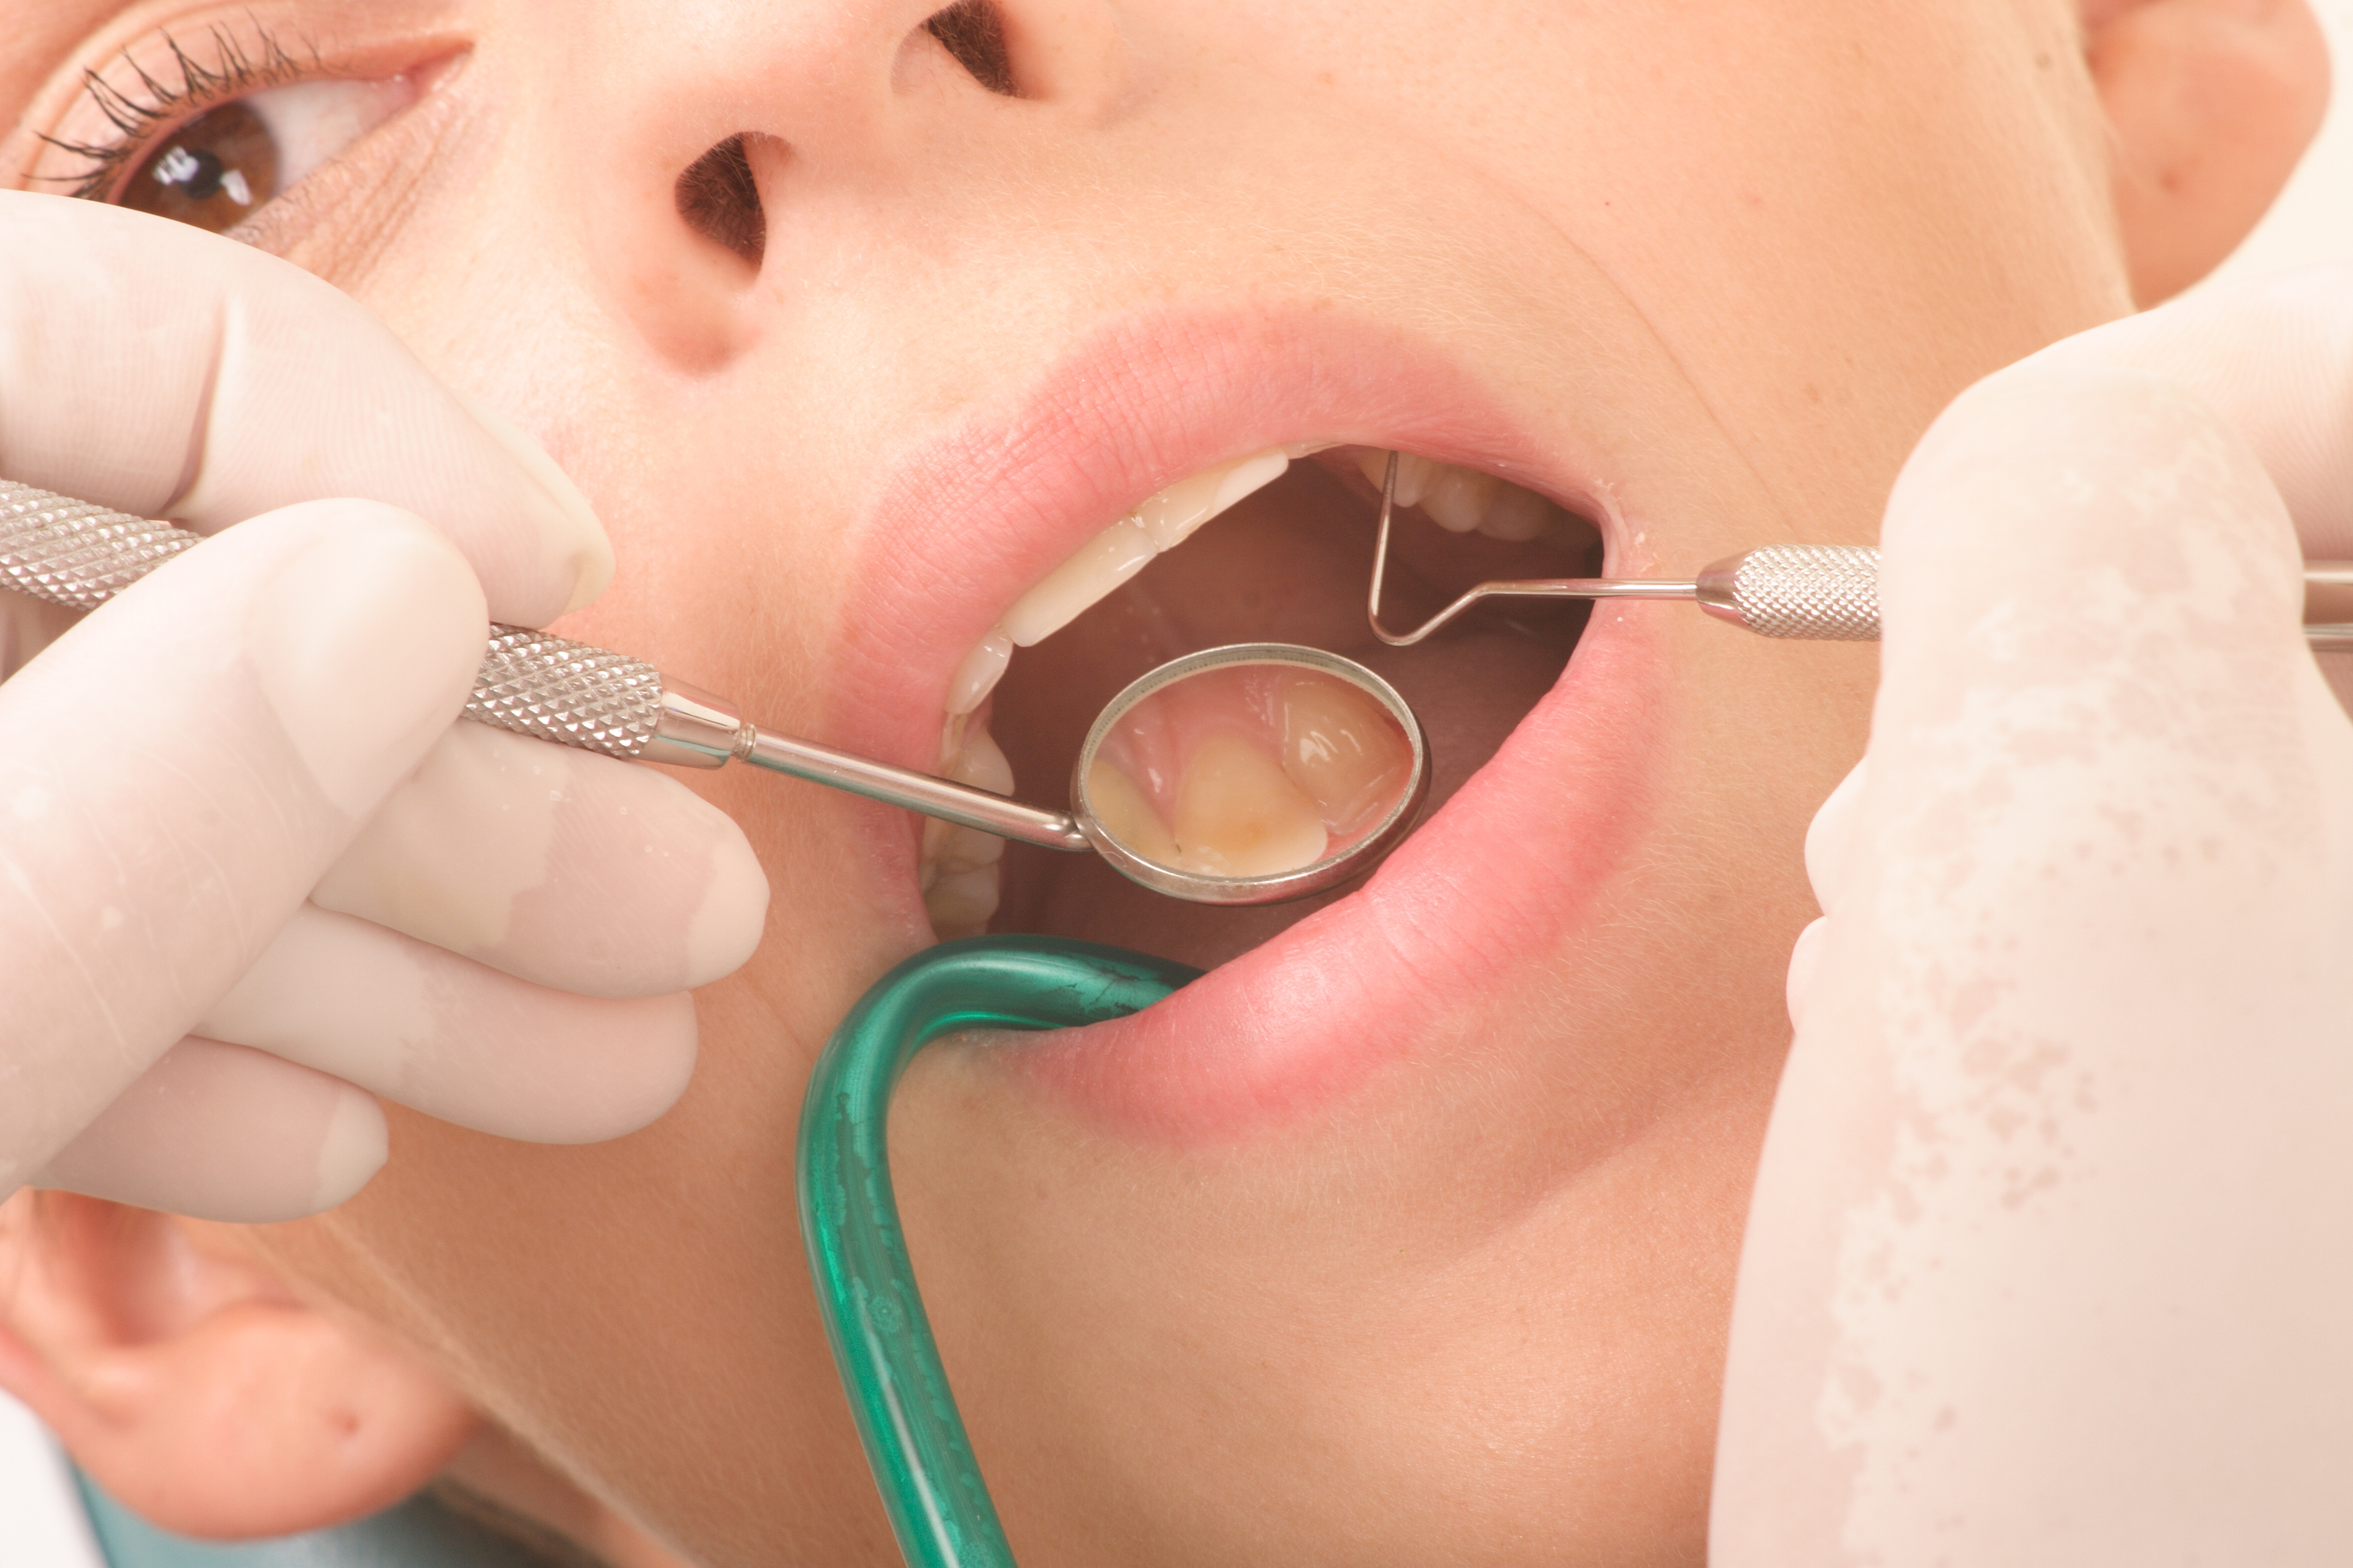 dental services include cleanng, teeth whitening, veneers, crowns, bridges and pediatric dentistry